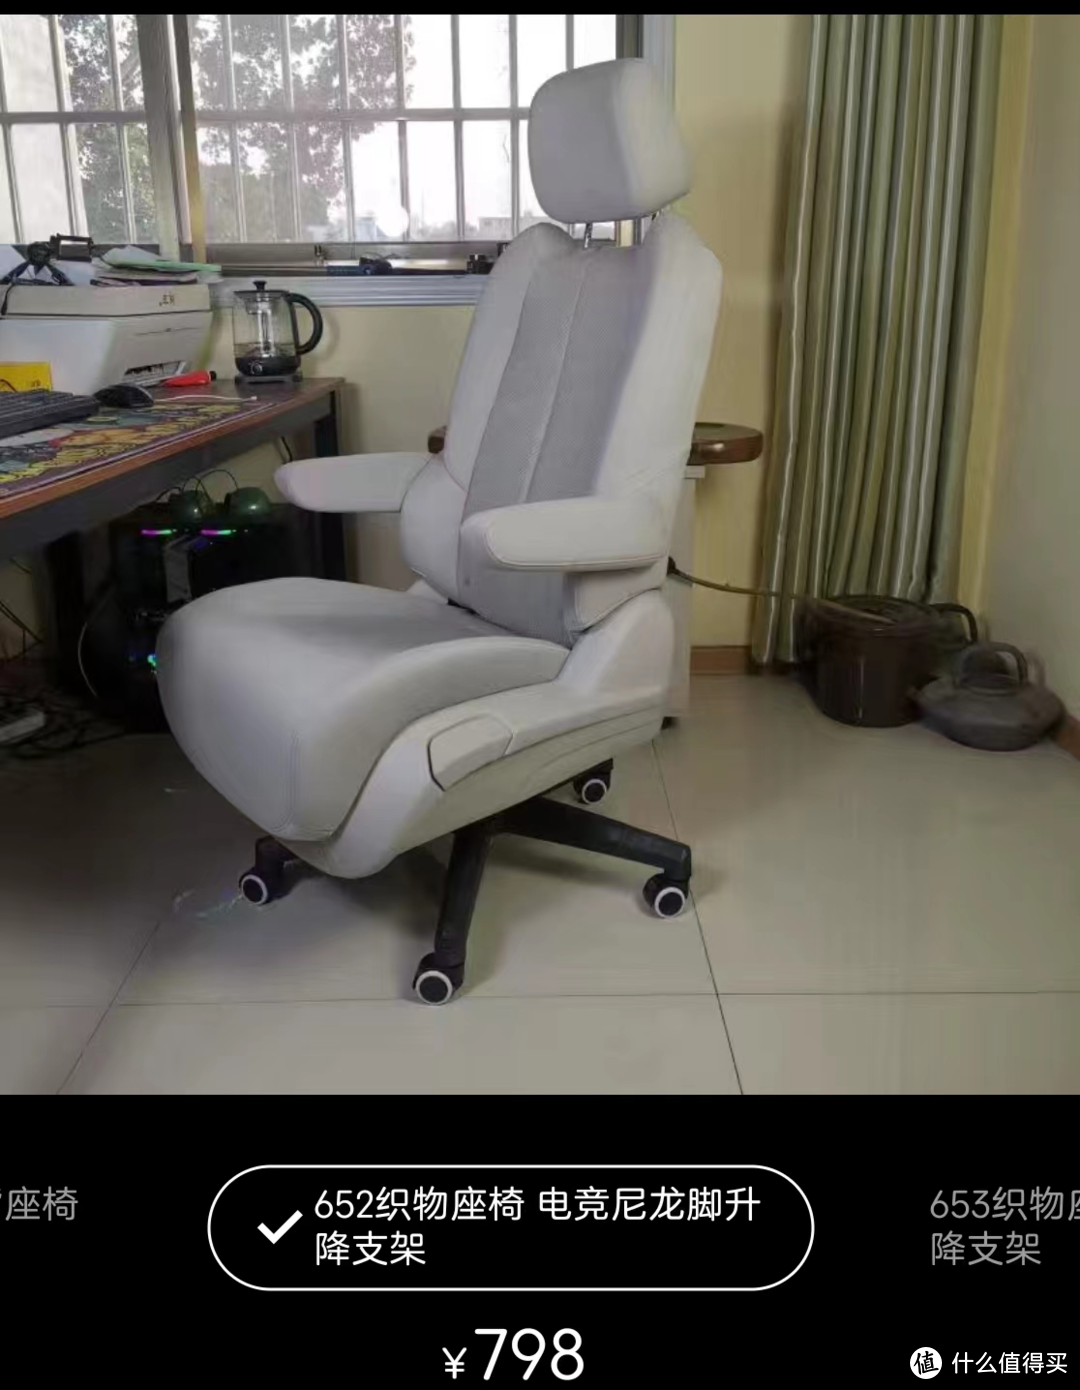 还在买GL8改装椅?1049全身可调还能撑腰的人体工学椅它不香吗?!求求别做大冤种!